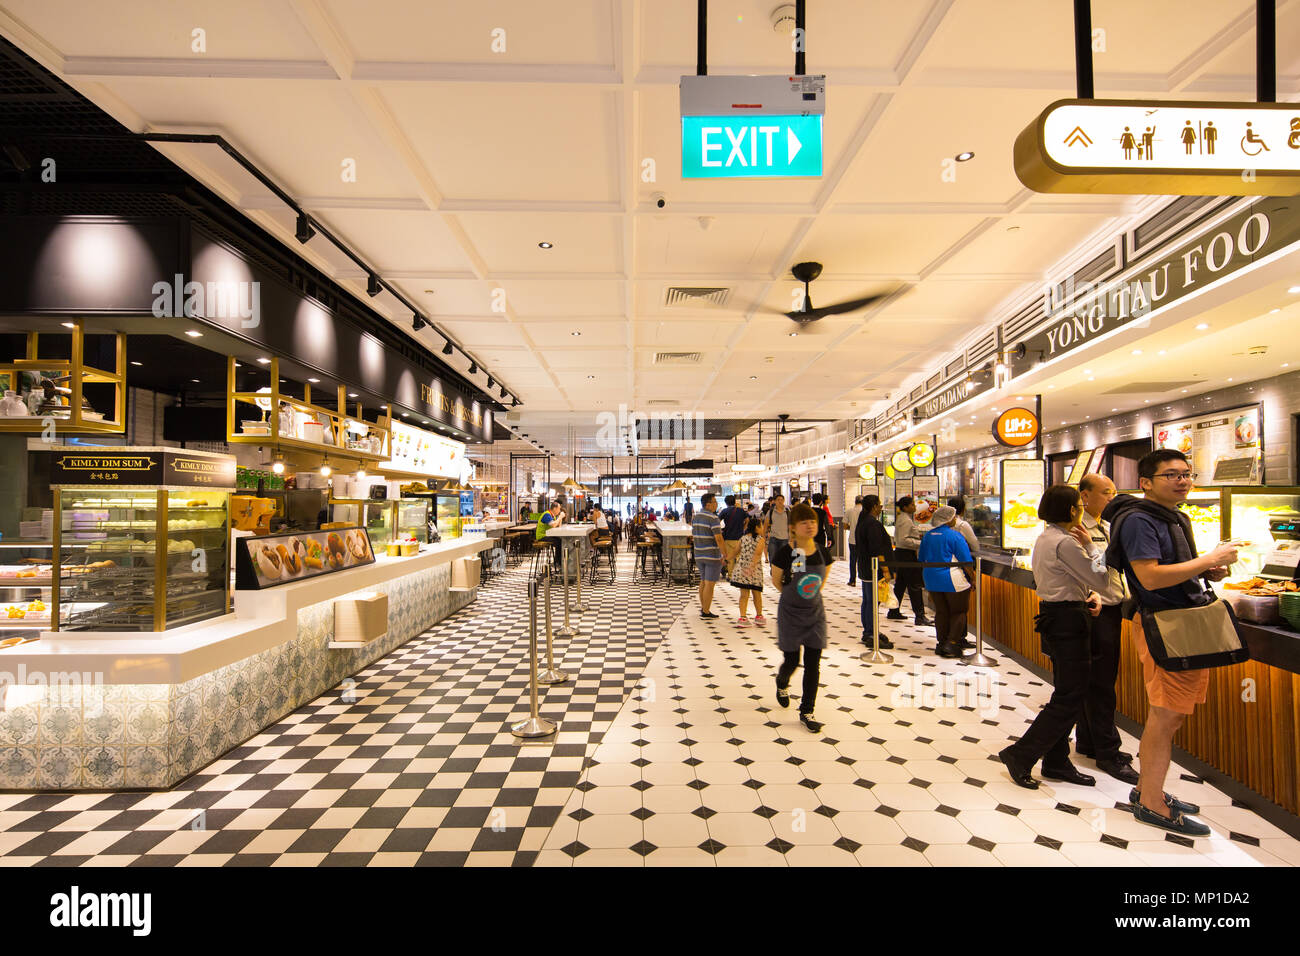 Innenarchitektur des Food Emporium oder allgemein bekannt als Food Court oder Essbereich am Flughafen Singapur Changi Terminal 4. Stockfoto